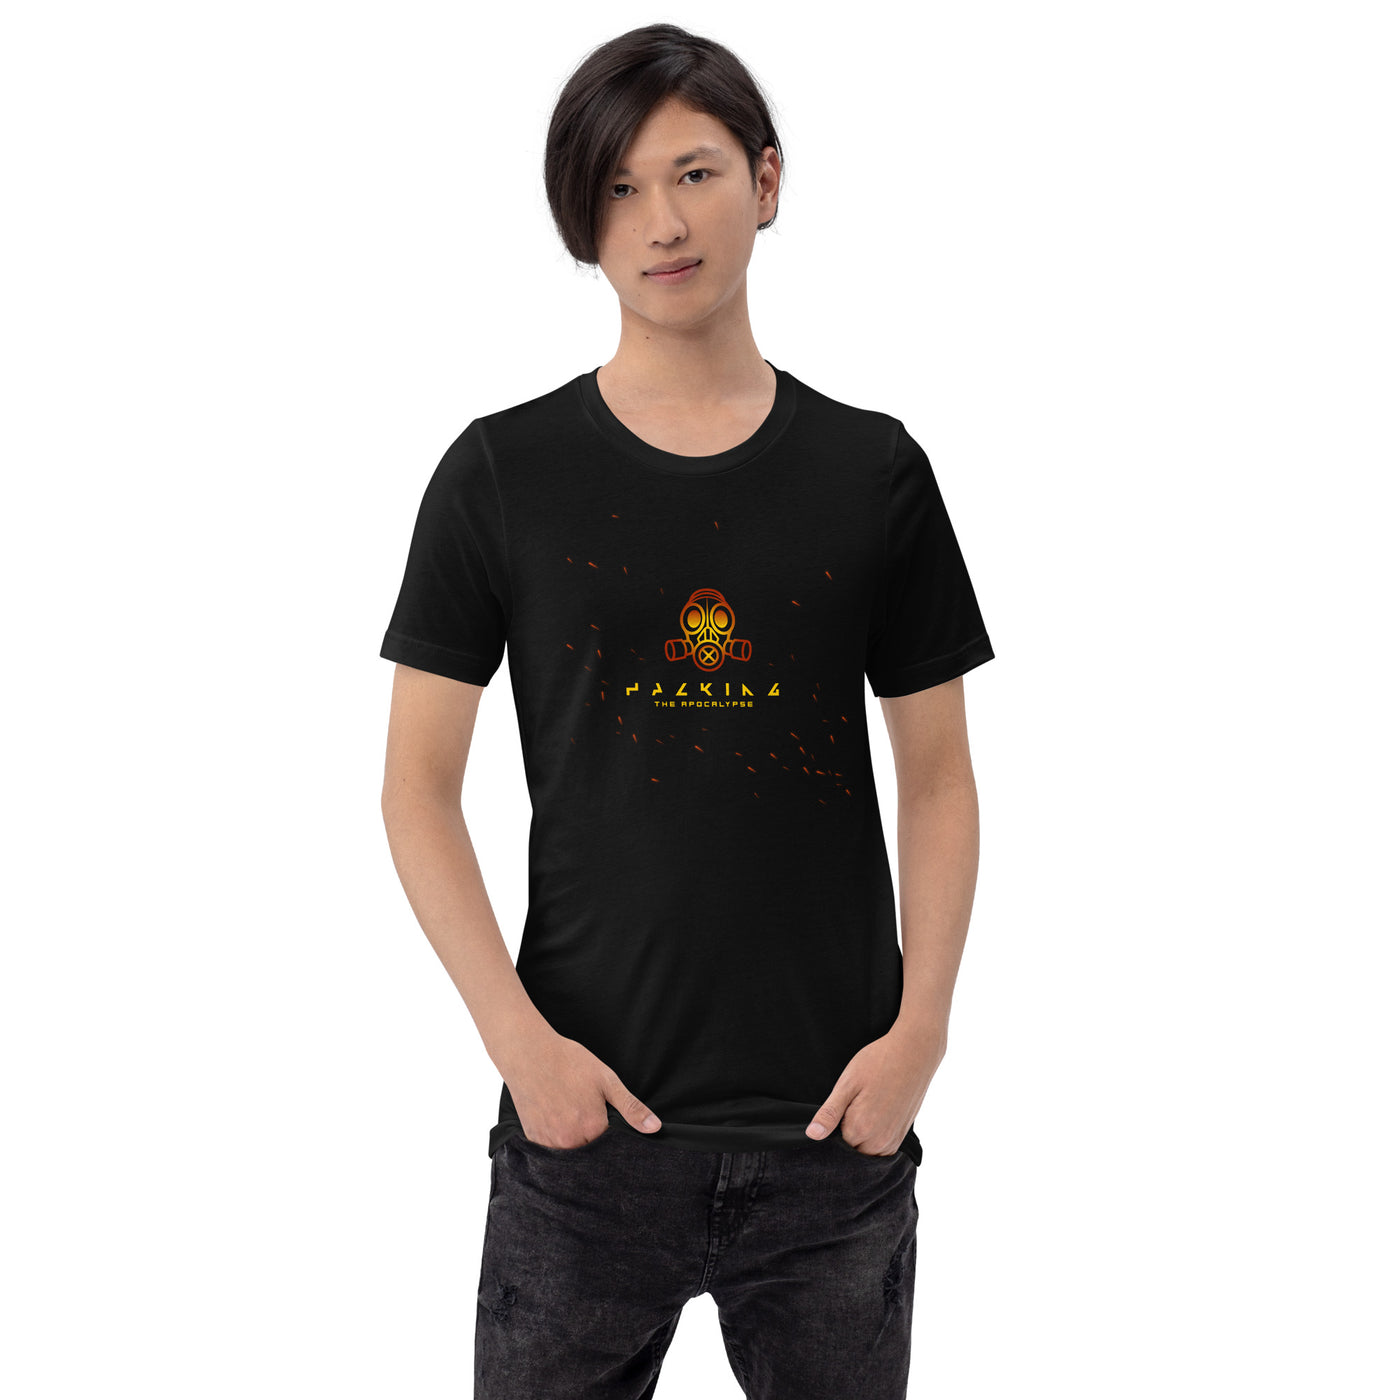 Hacking the apocalypse - Unisex t-shirt